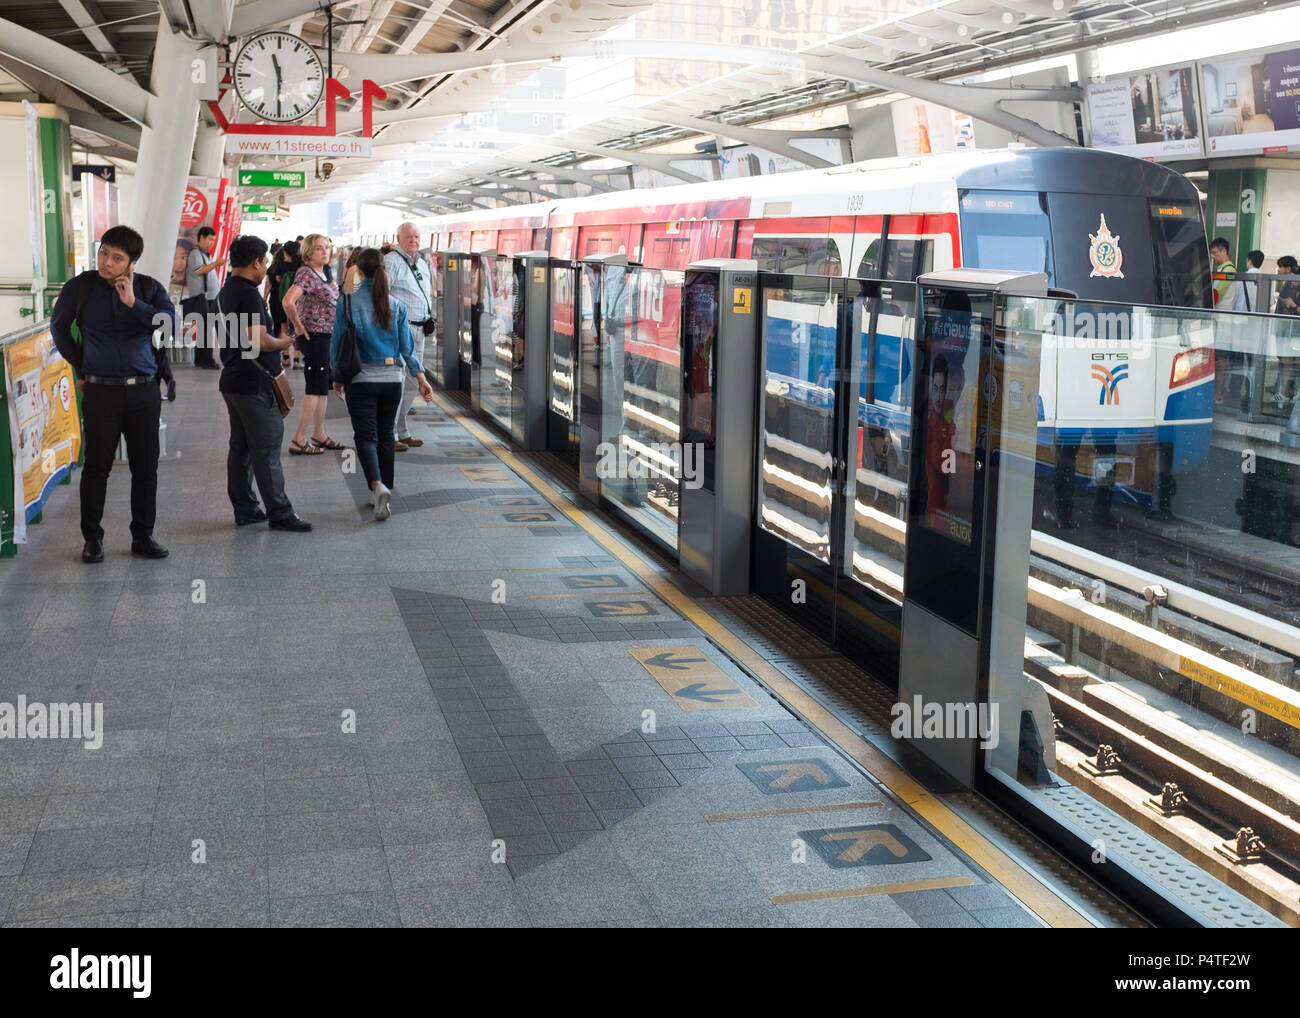 Les passagers qui attendent près de barrière de sécurité à la station de métro (BTS), Bangkok, Thaïlande, Asie. Banque D'Images